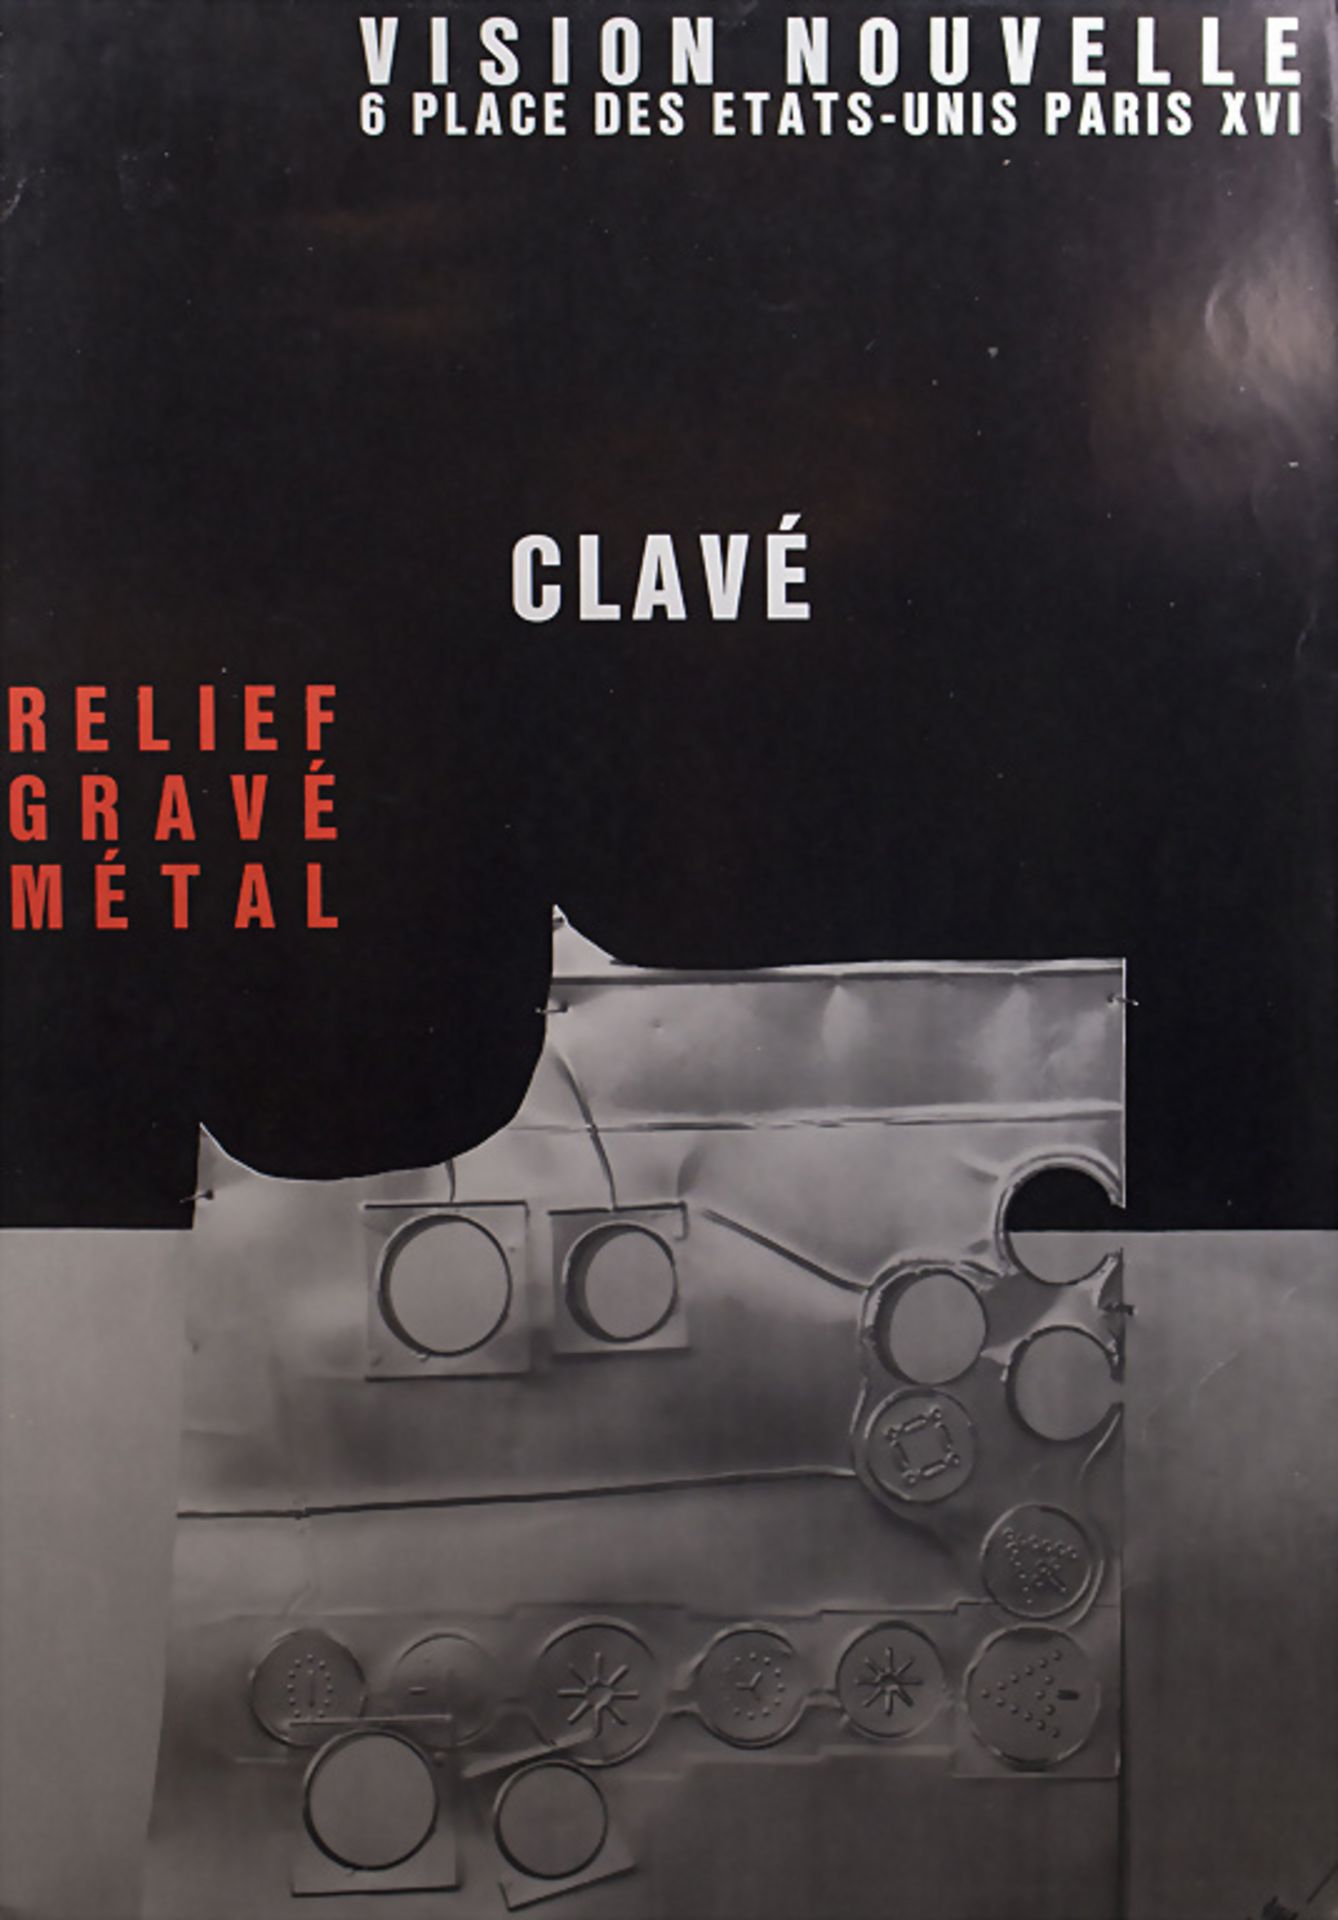 Antoni CLAVÉ (1913-2005), Ausstellungsplakat / Exhibition poster, Paris, Expo 1971